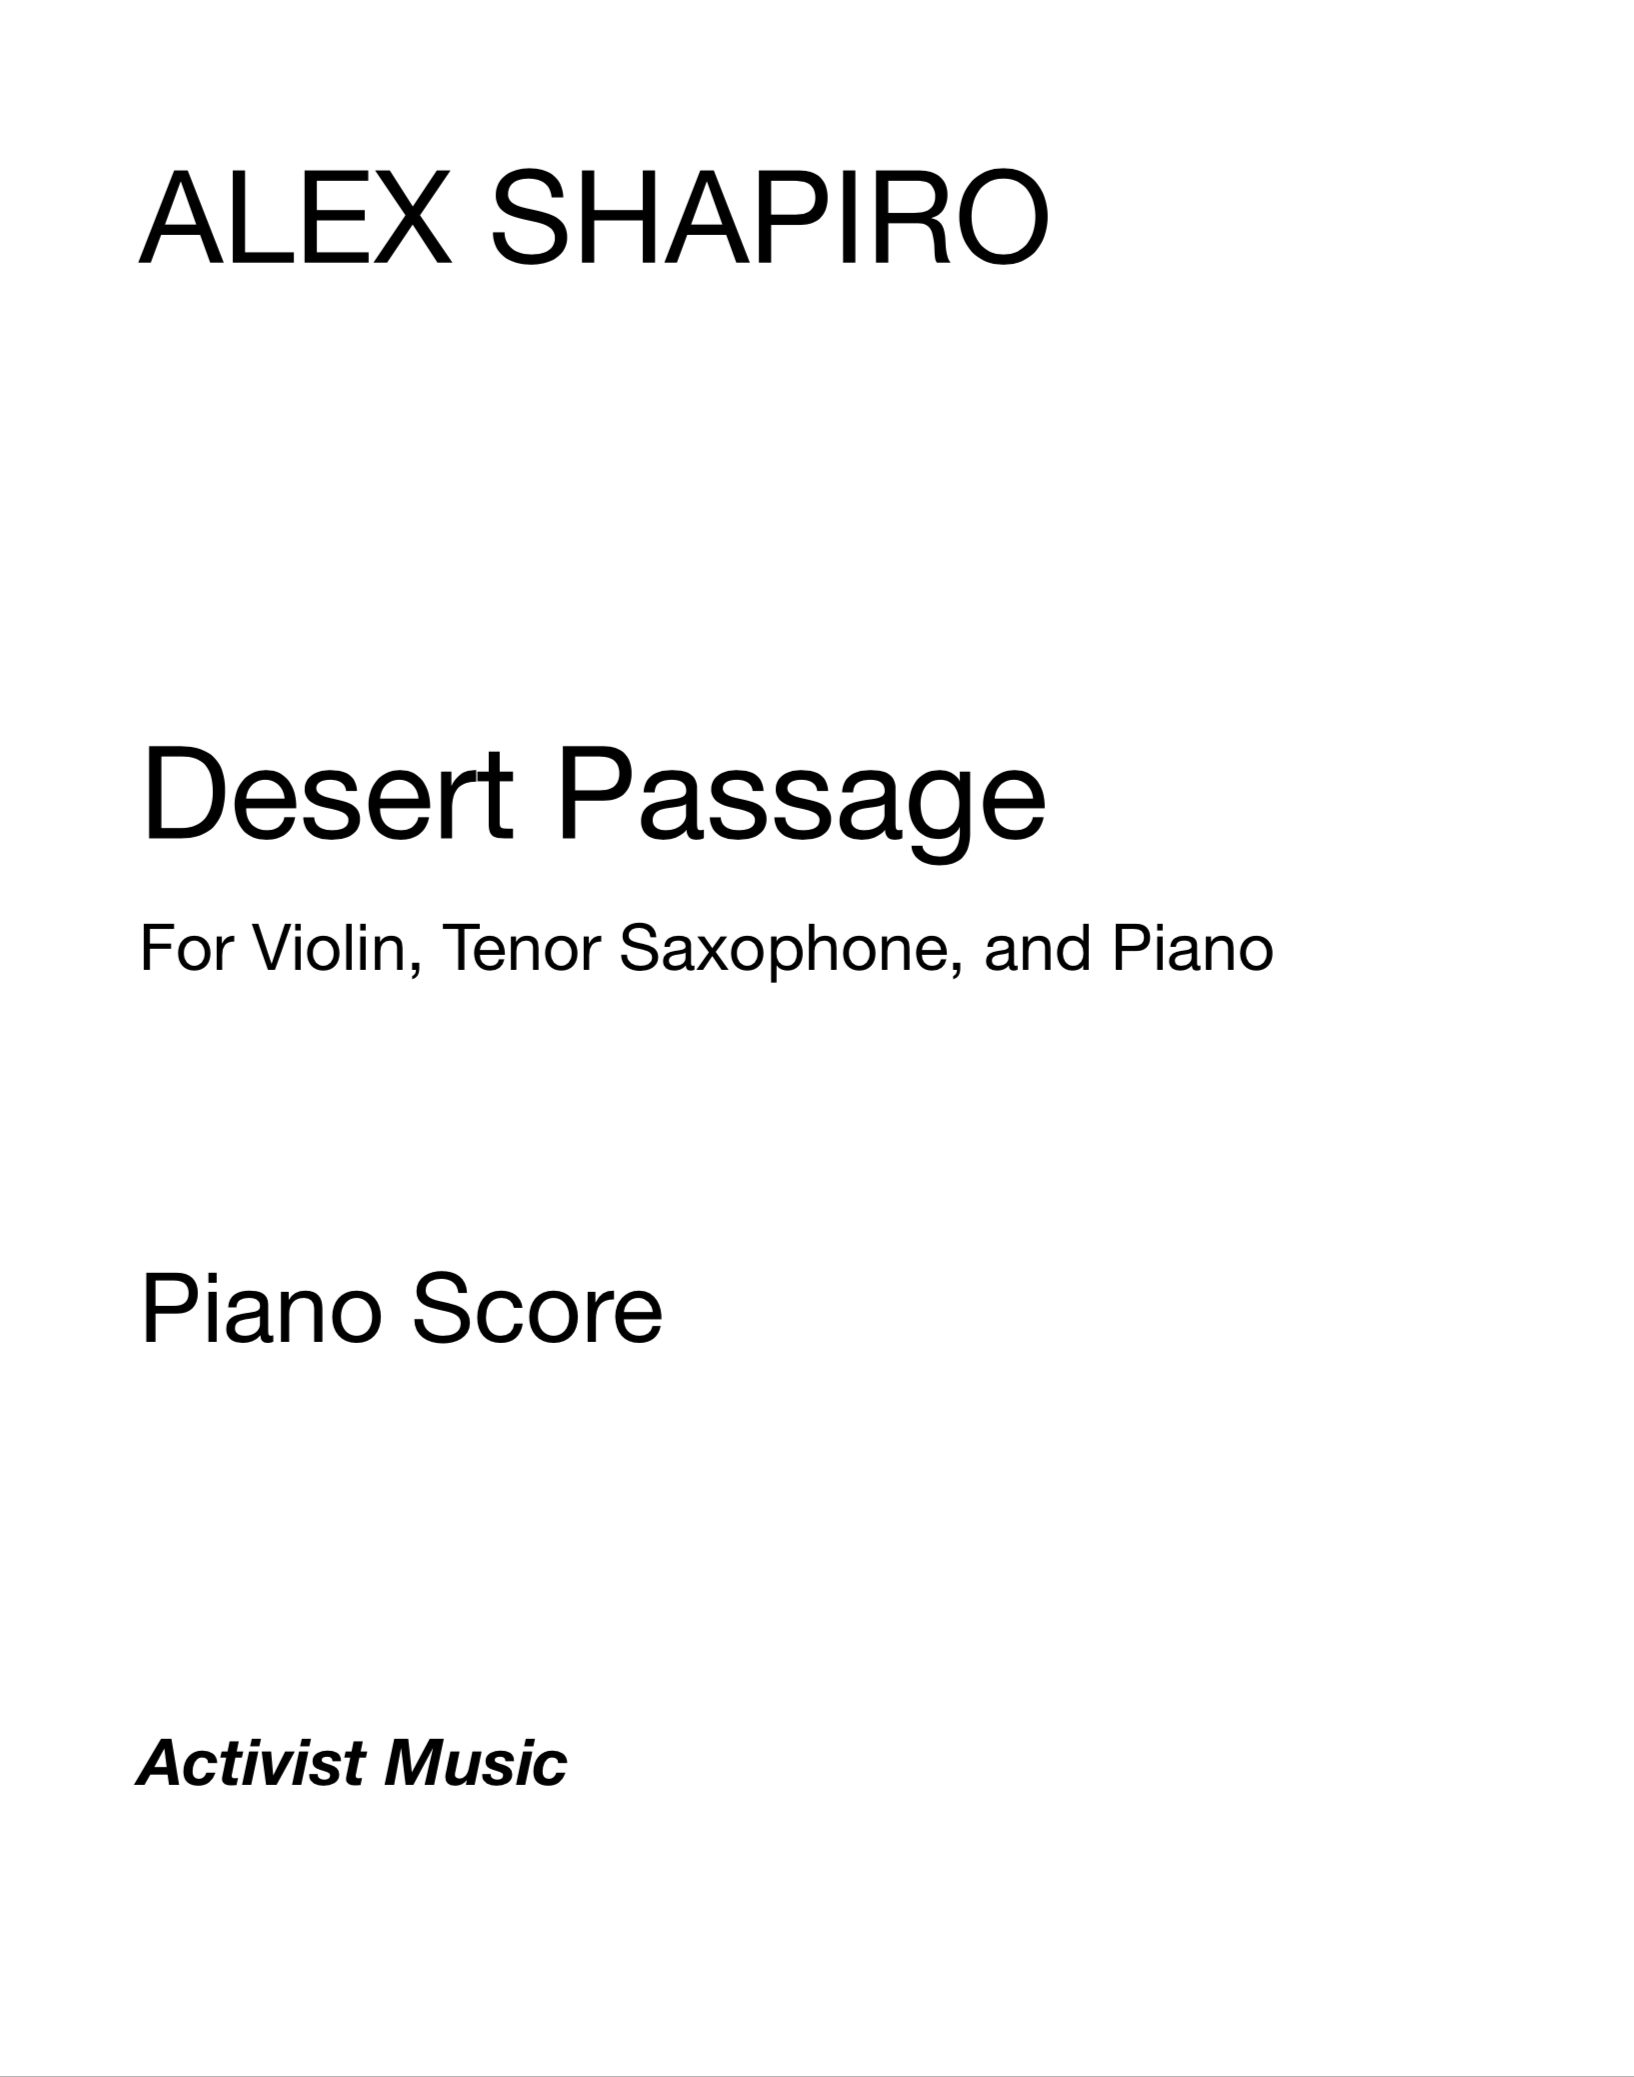 デザート・パッセージ（アレックス・シャピロ）（ミックス二重奏+ピアノ）【Desert Passage】